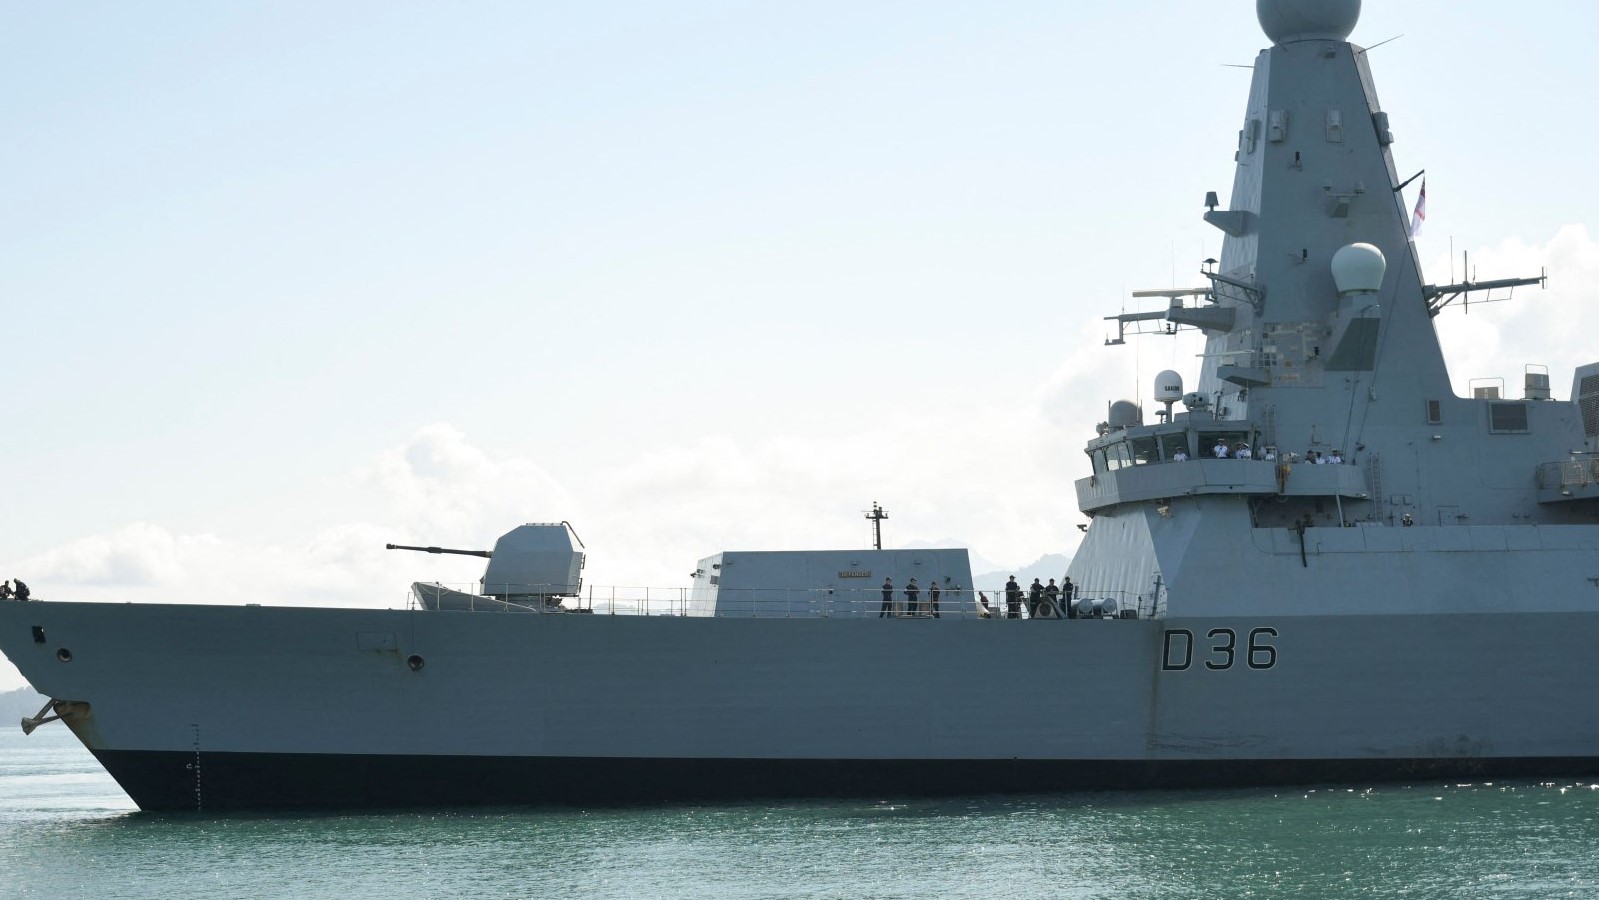 وصول مدمرة البحرية الملكية البريطانية إتش إم إس ديفندر إلى ميناء باتومي على البحر الأسود في 26 يونيو 2021 للمشاركة في المناورات